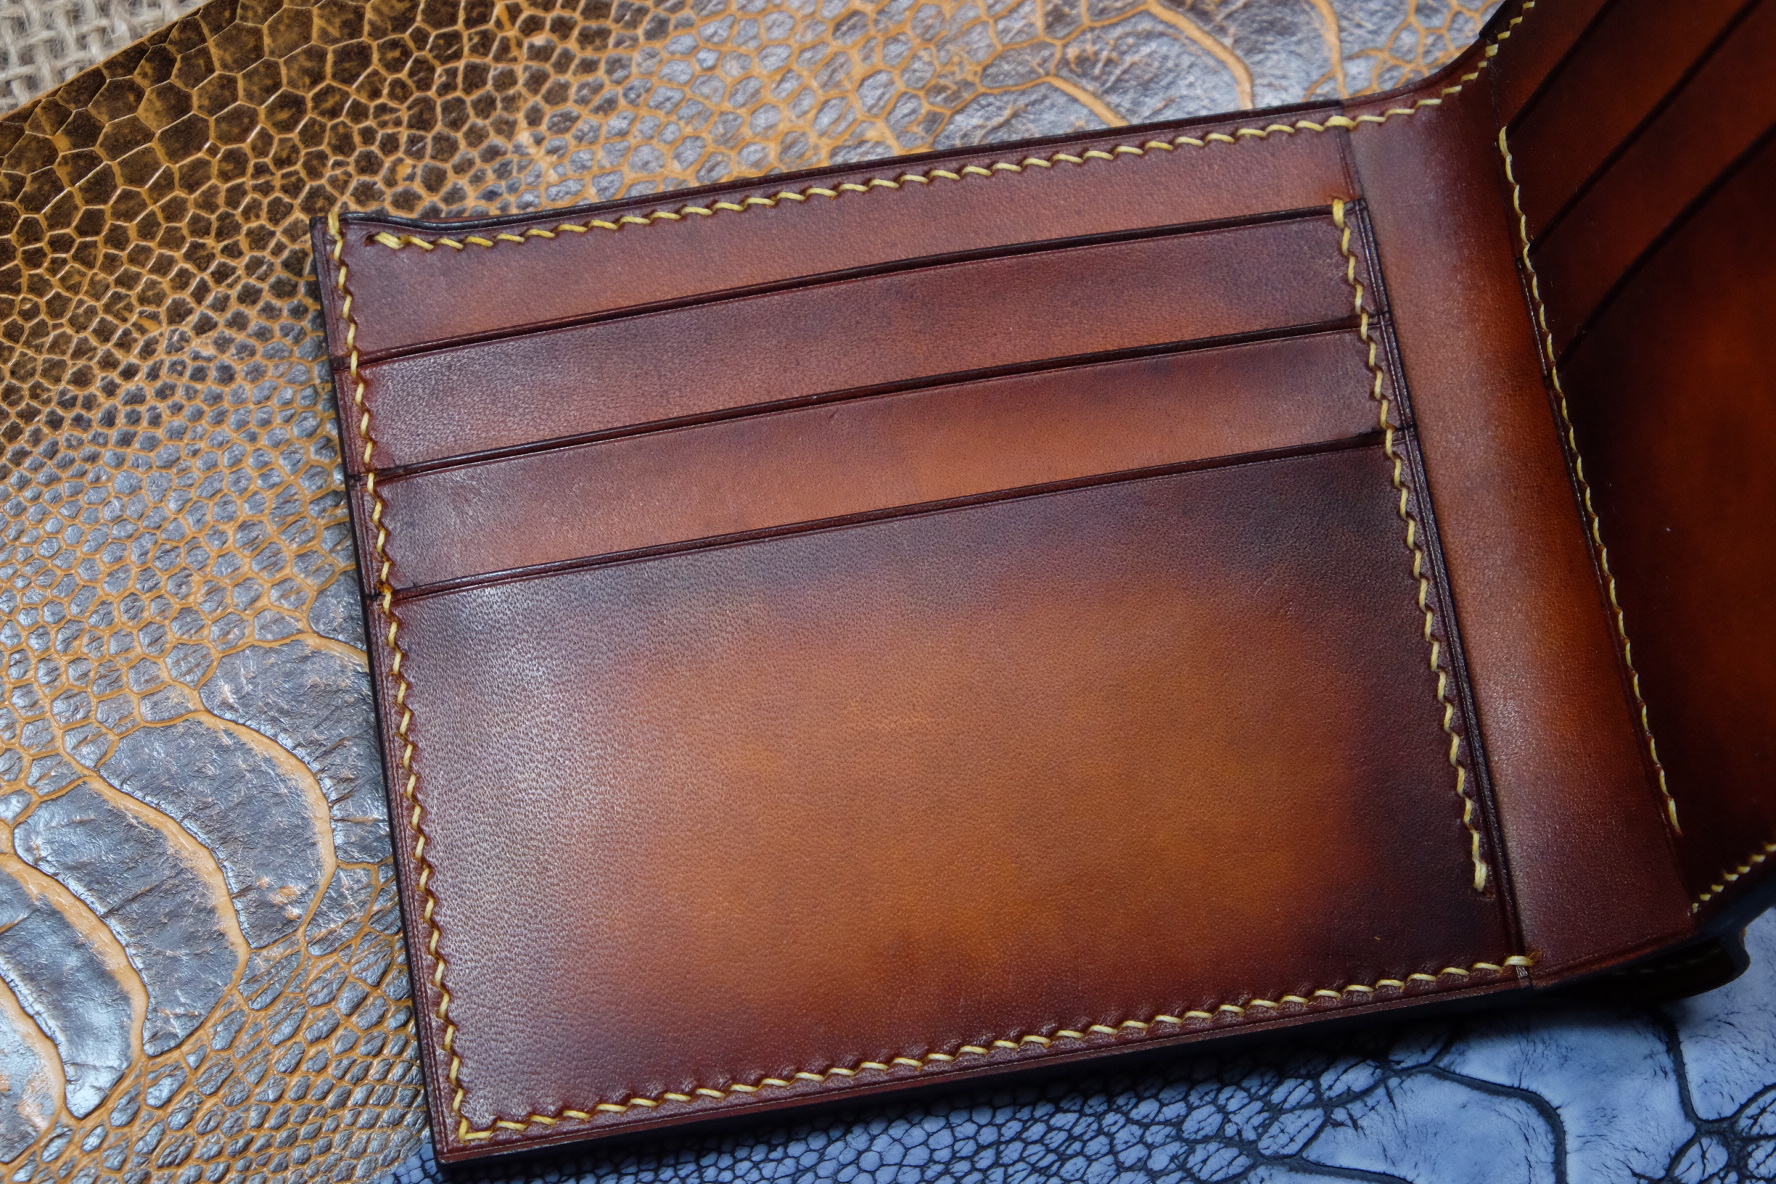 patina vachetta leather